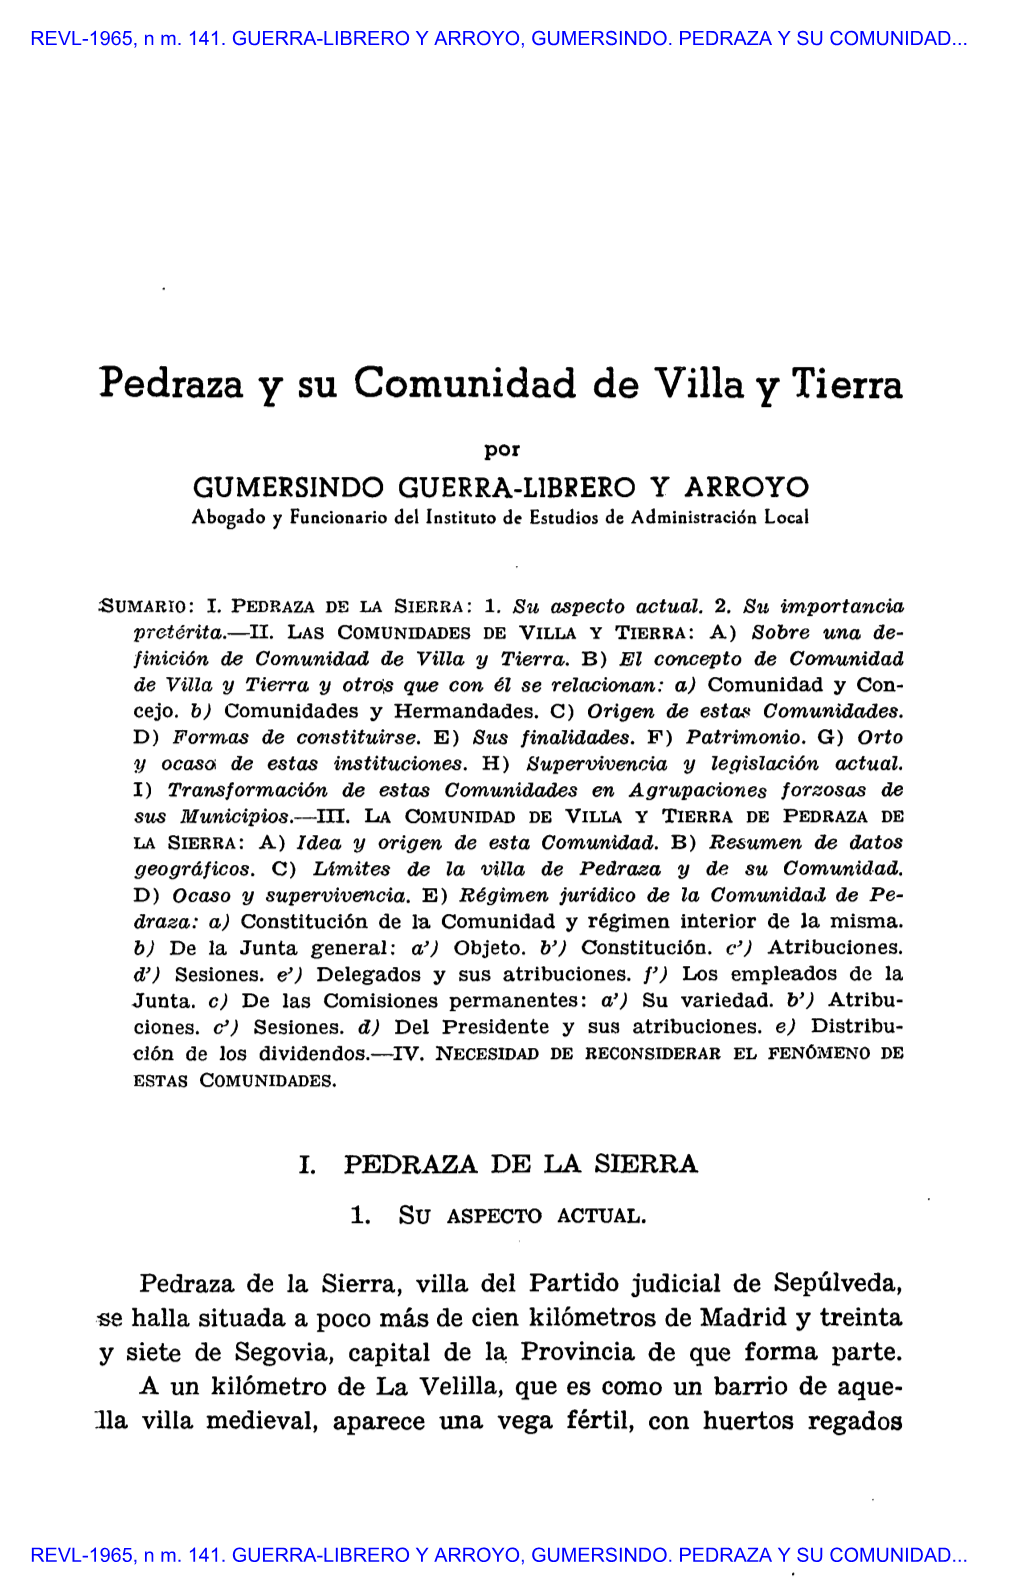 REVL-1965, Núm. 141. GUERRA-LIBRERO Y ARROYO, GUMERSINDO. PEDRAZA Y SU COMUNIDAD DE VILLA Y TIERRA